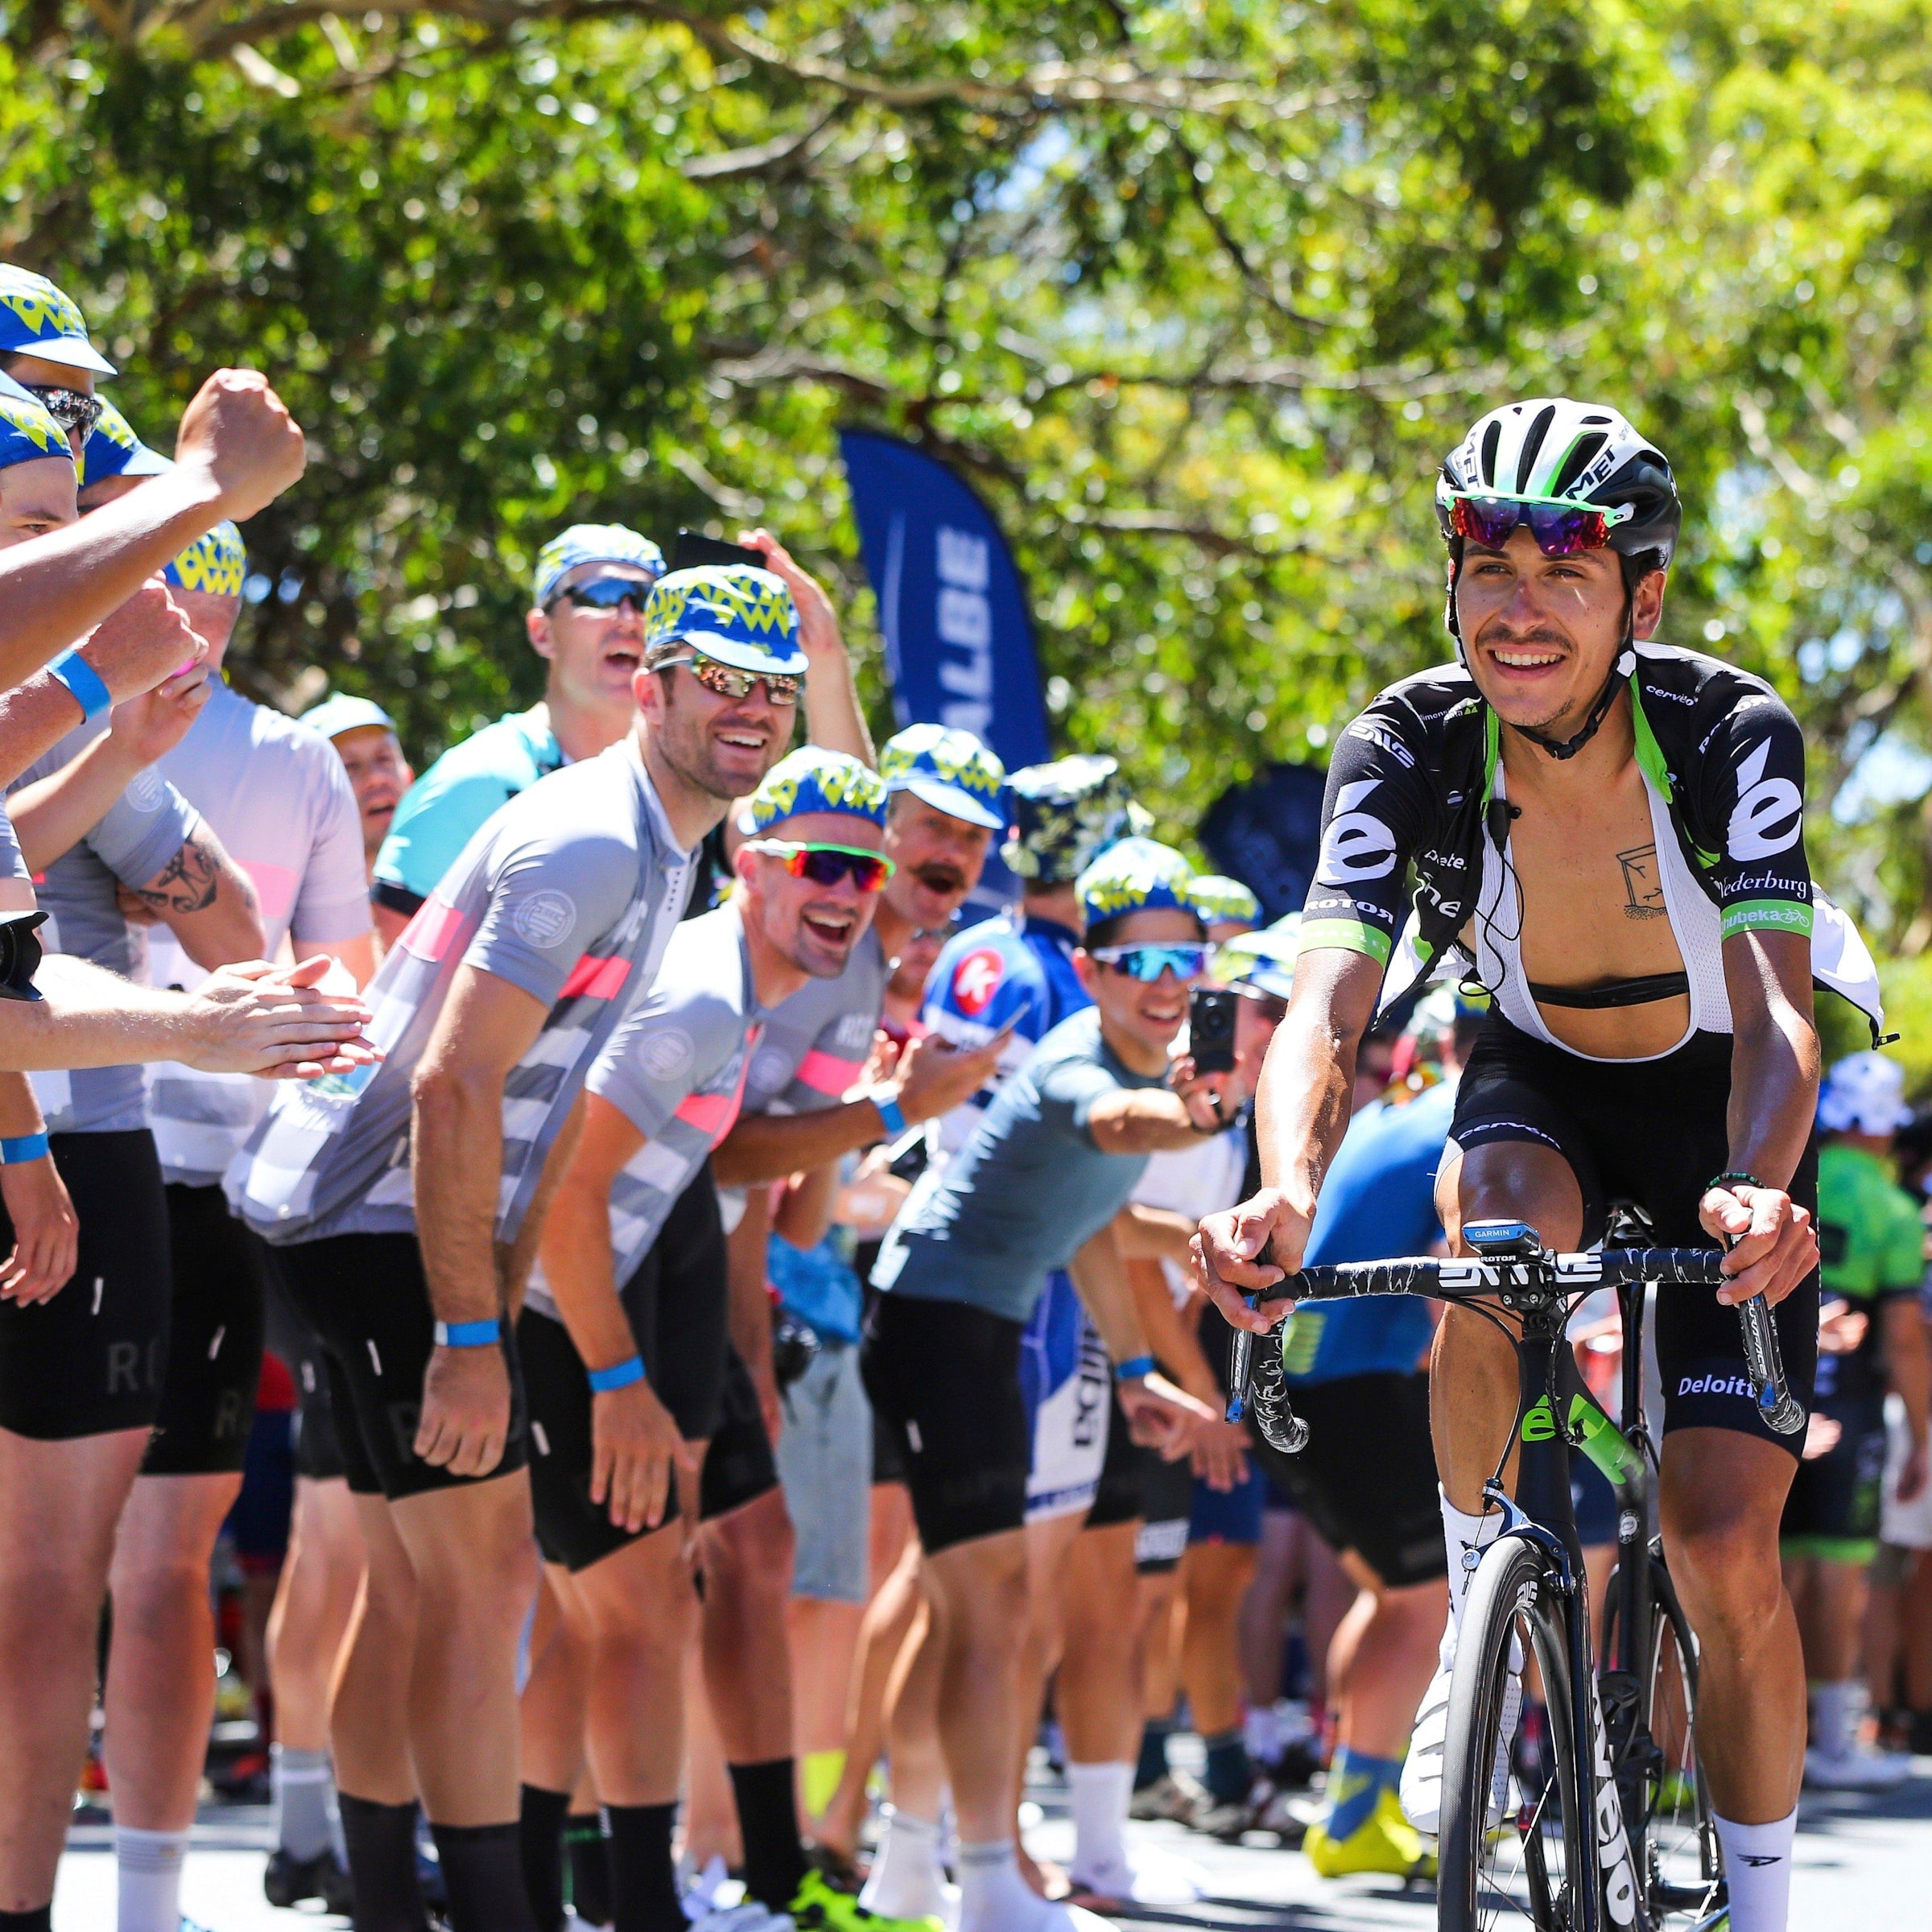 KASK Eyewear Make Debut at Tour Down Under - Bicycling Australia